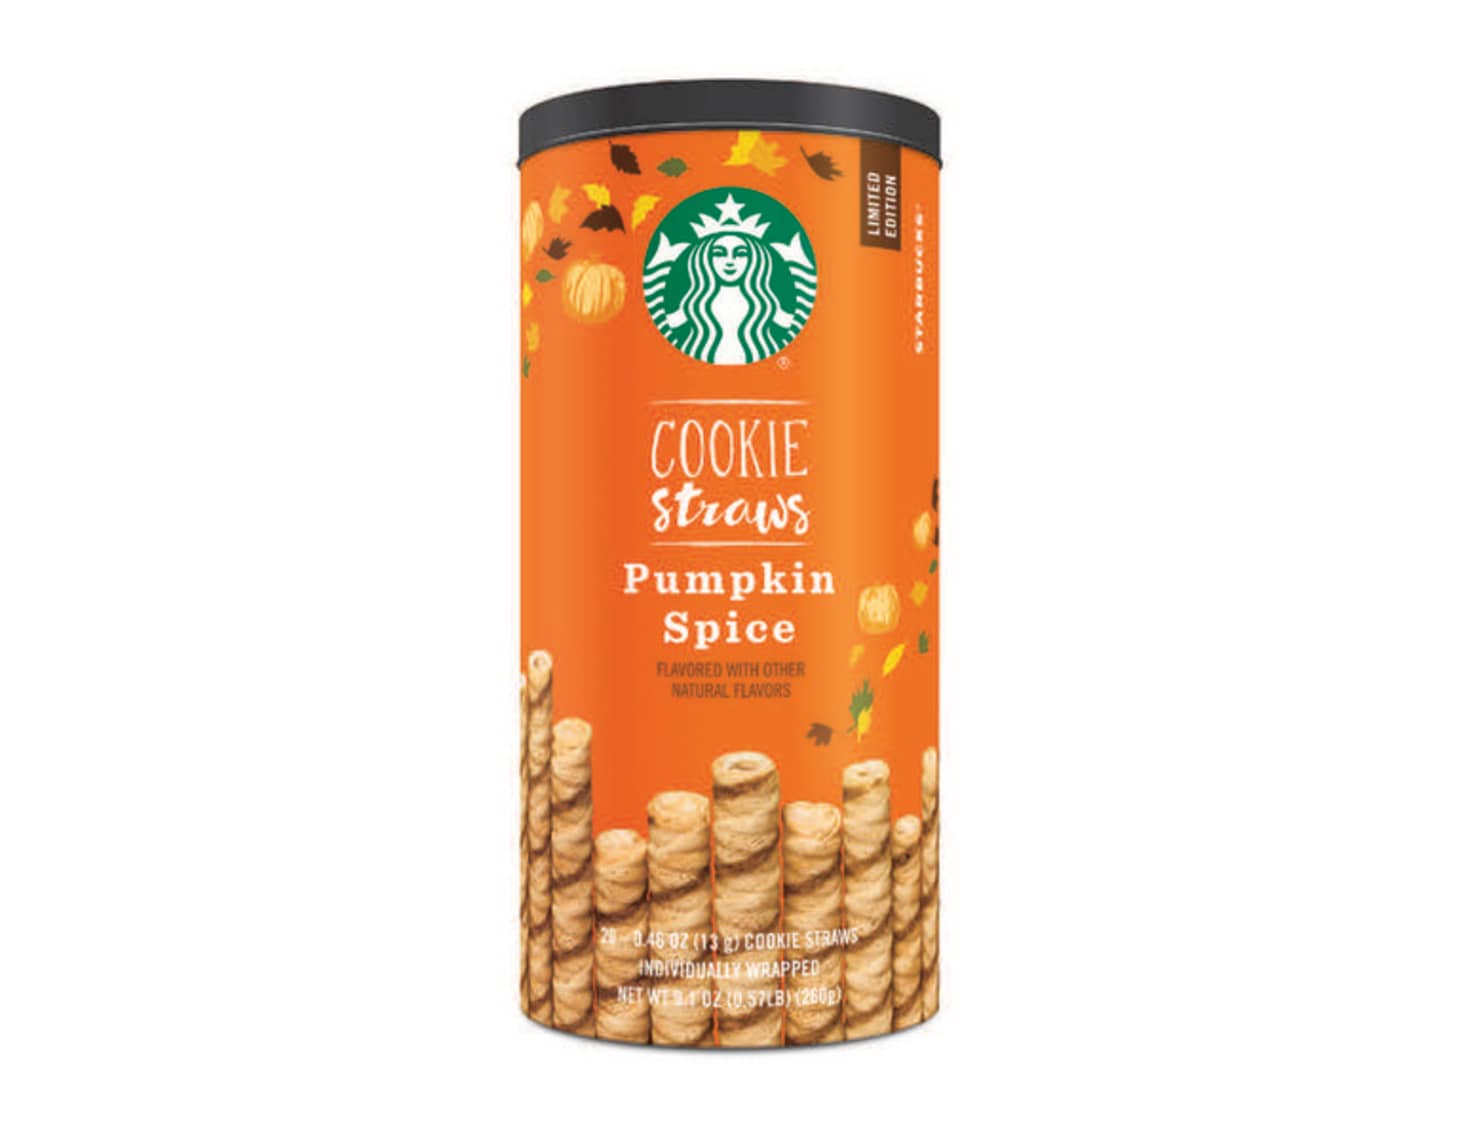 Starbucks New Pumpkin Spice Products Cookie Straws Kitchn